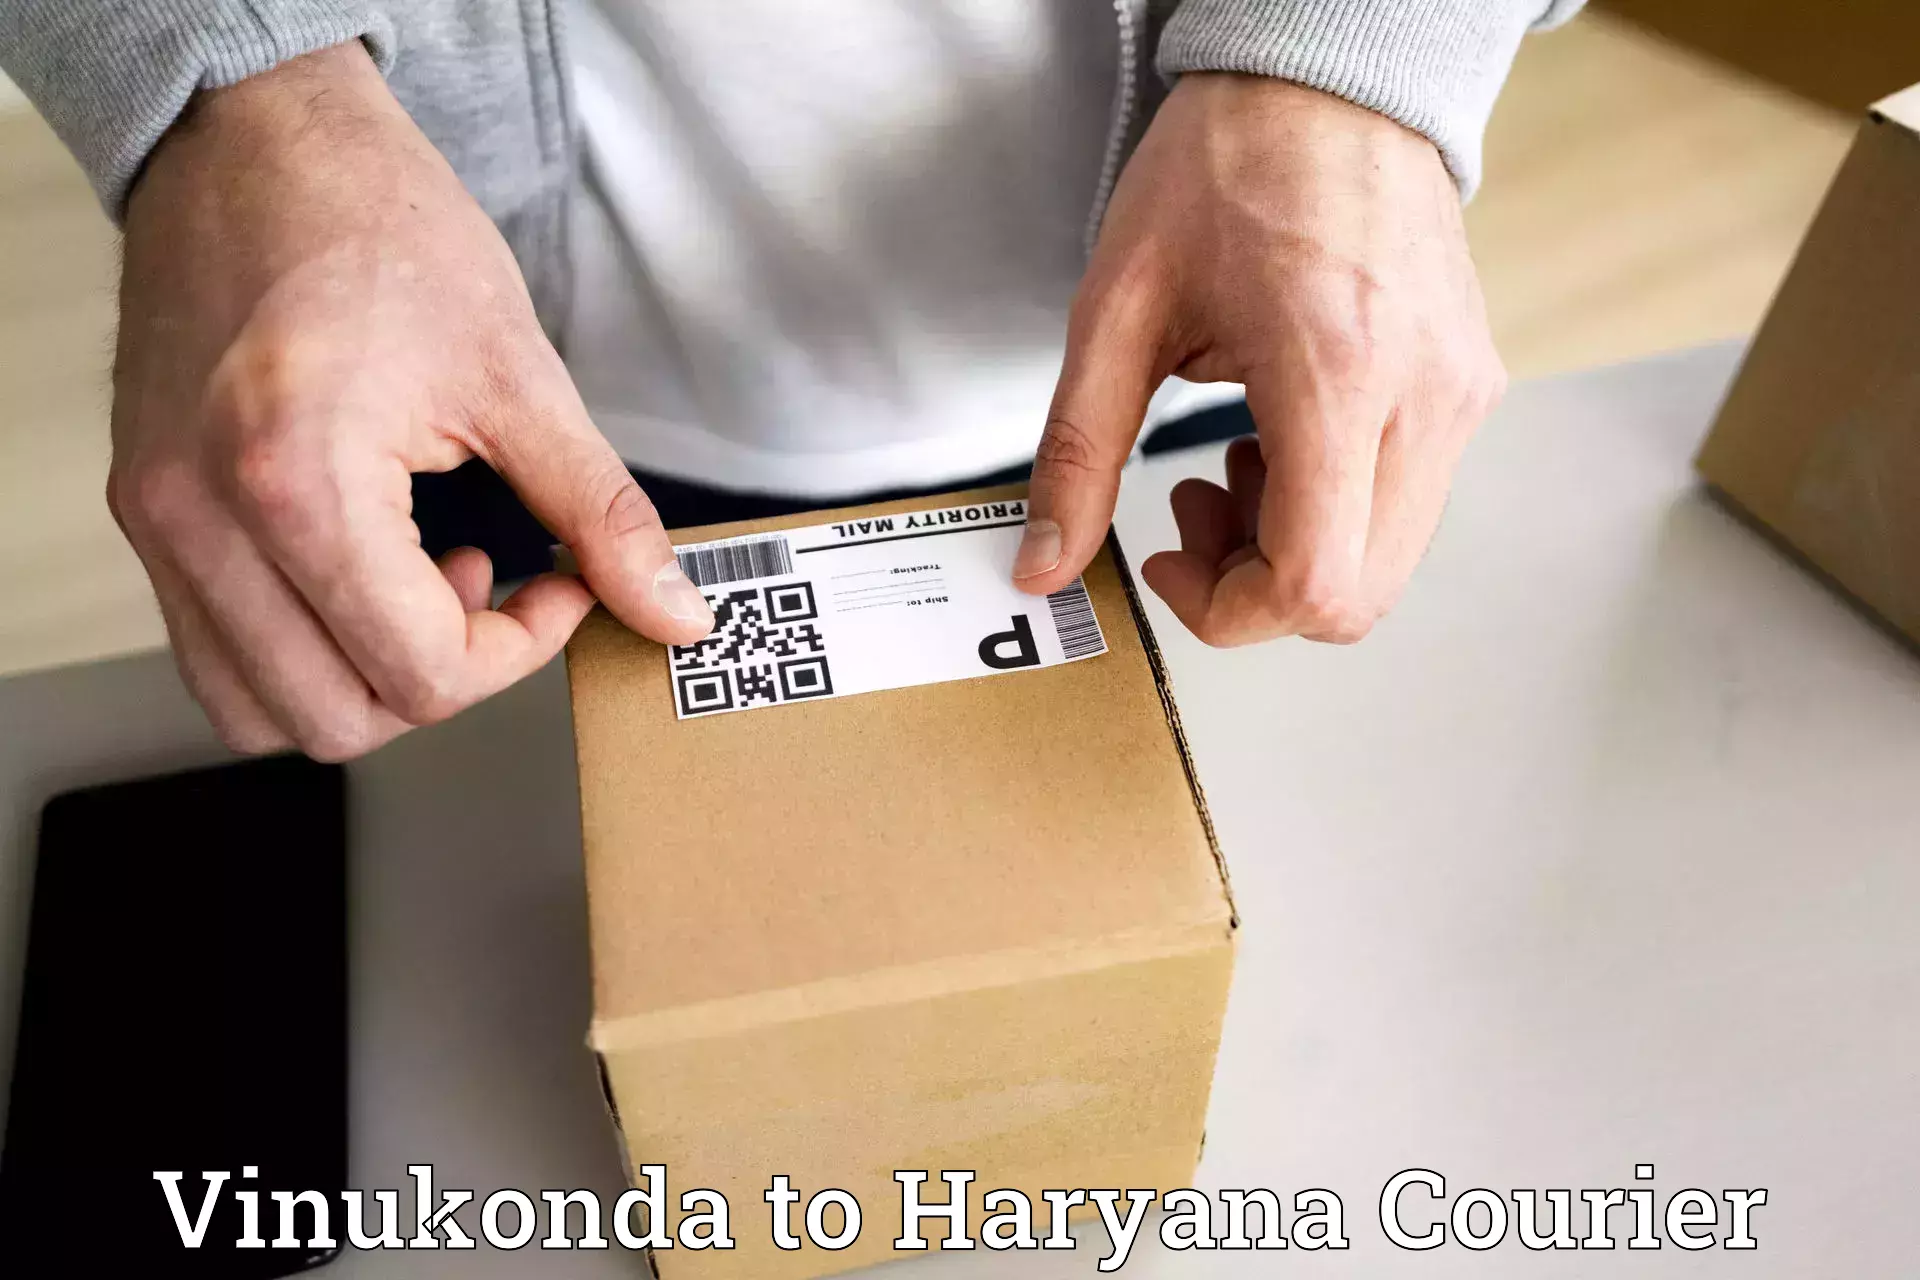 Courier service innovation Vinukonda to Panchkula